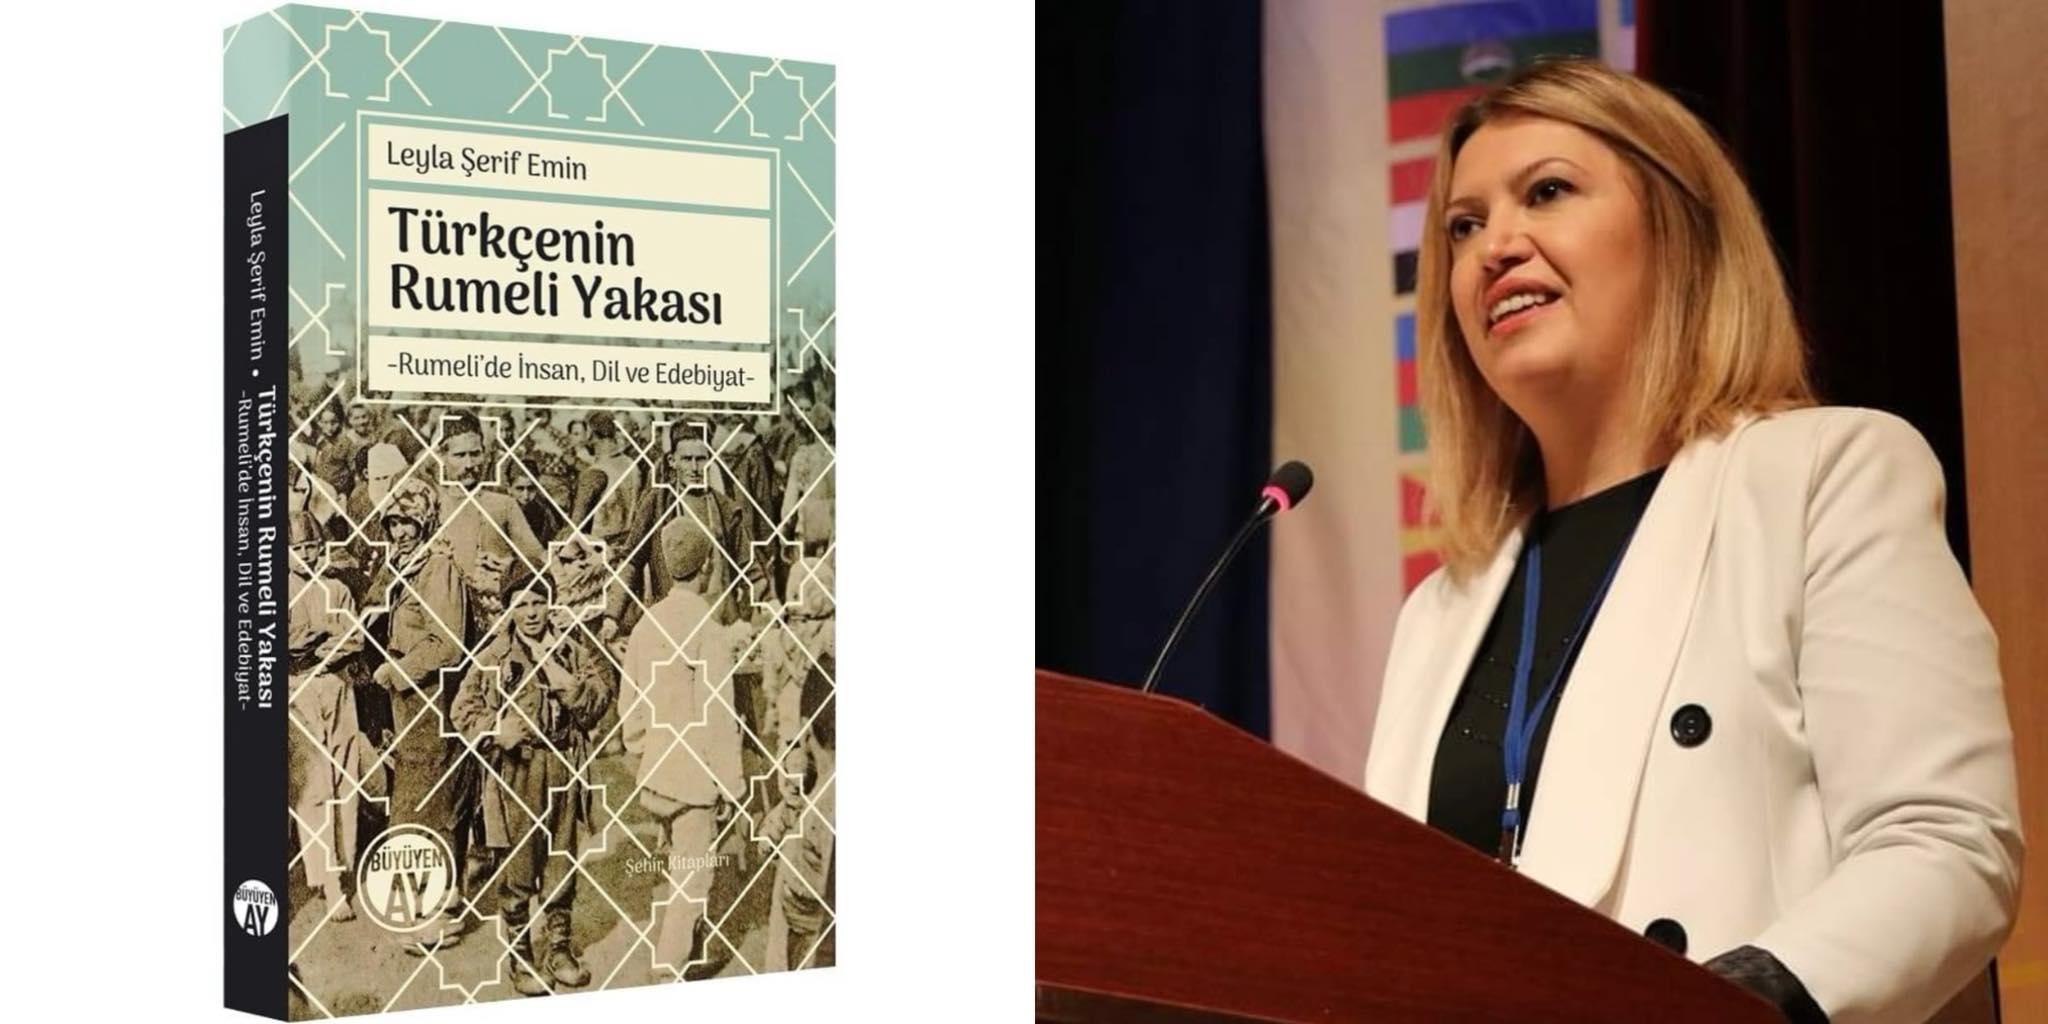 Üsküplü Türk yazar Leyla Şerif Emin, ESKADER’in prestijli ödülüne layık görüldü